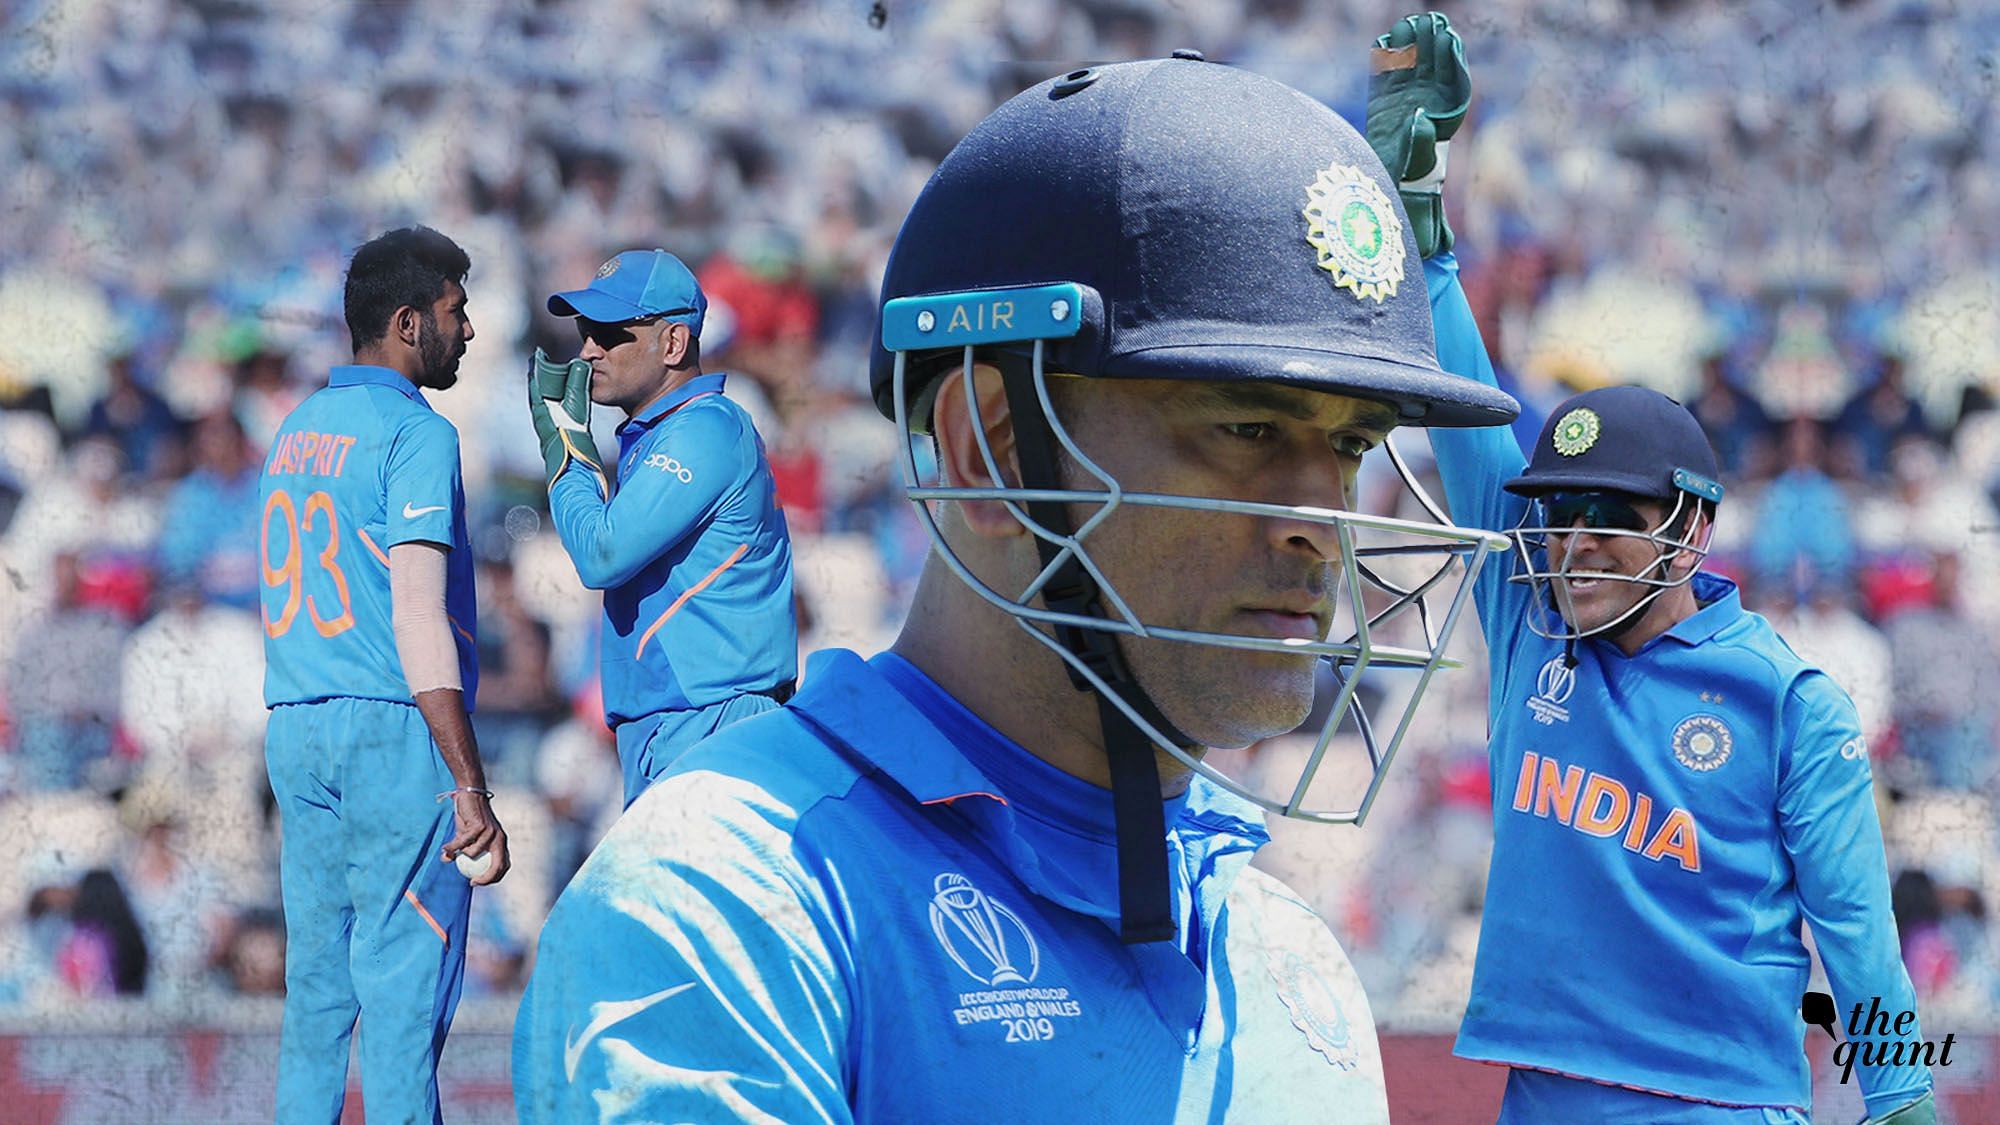 महेंद्र सिंह धोनी की कप्तानी में भारत ने जीता था पहला टी-20 वर्ल्ड कप